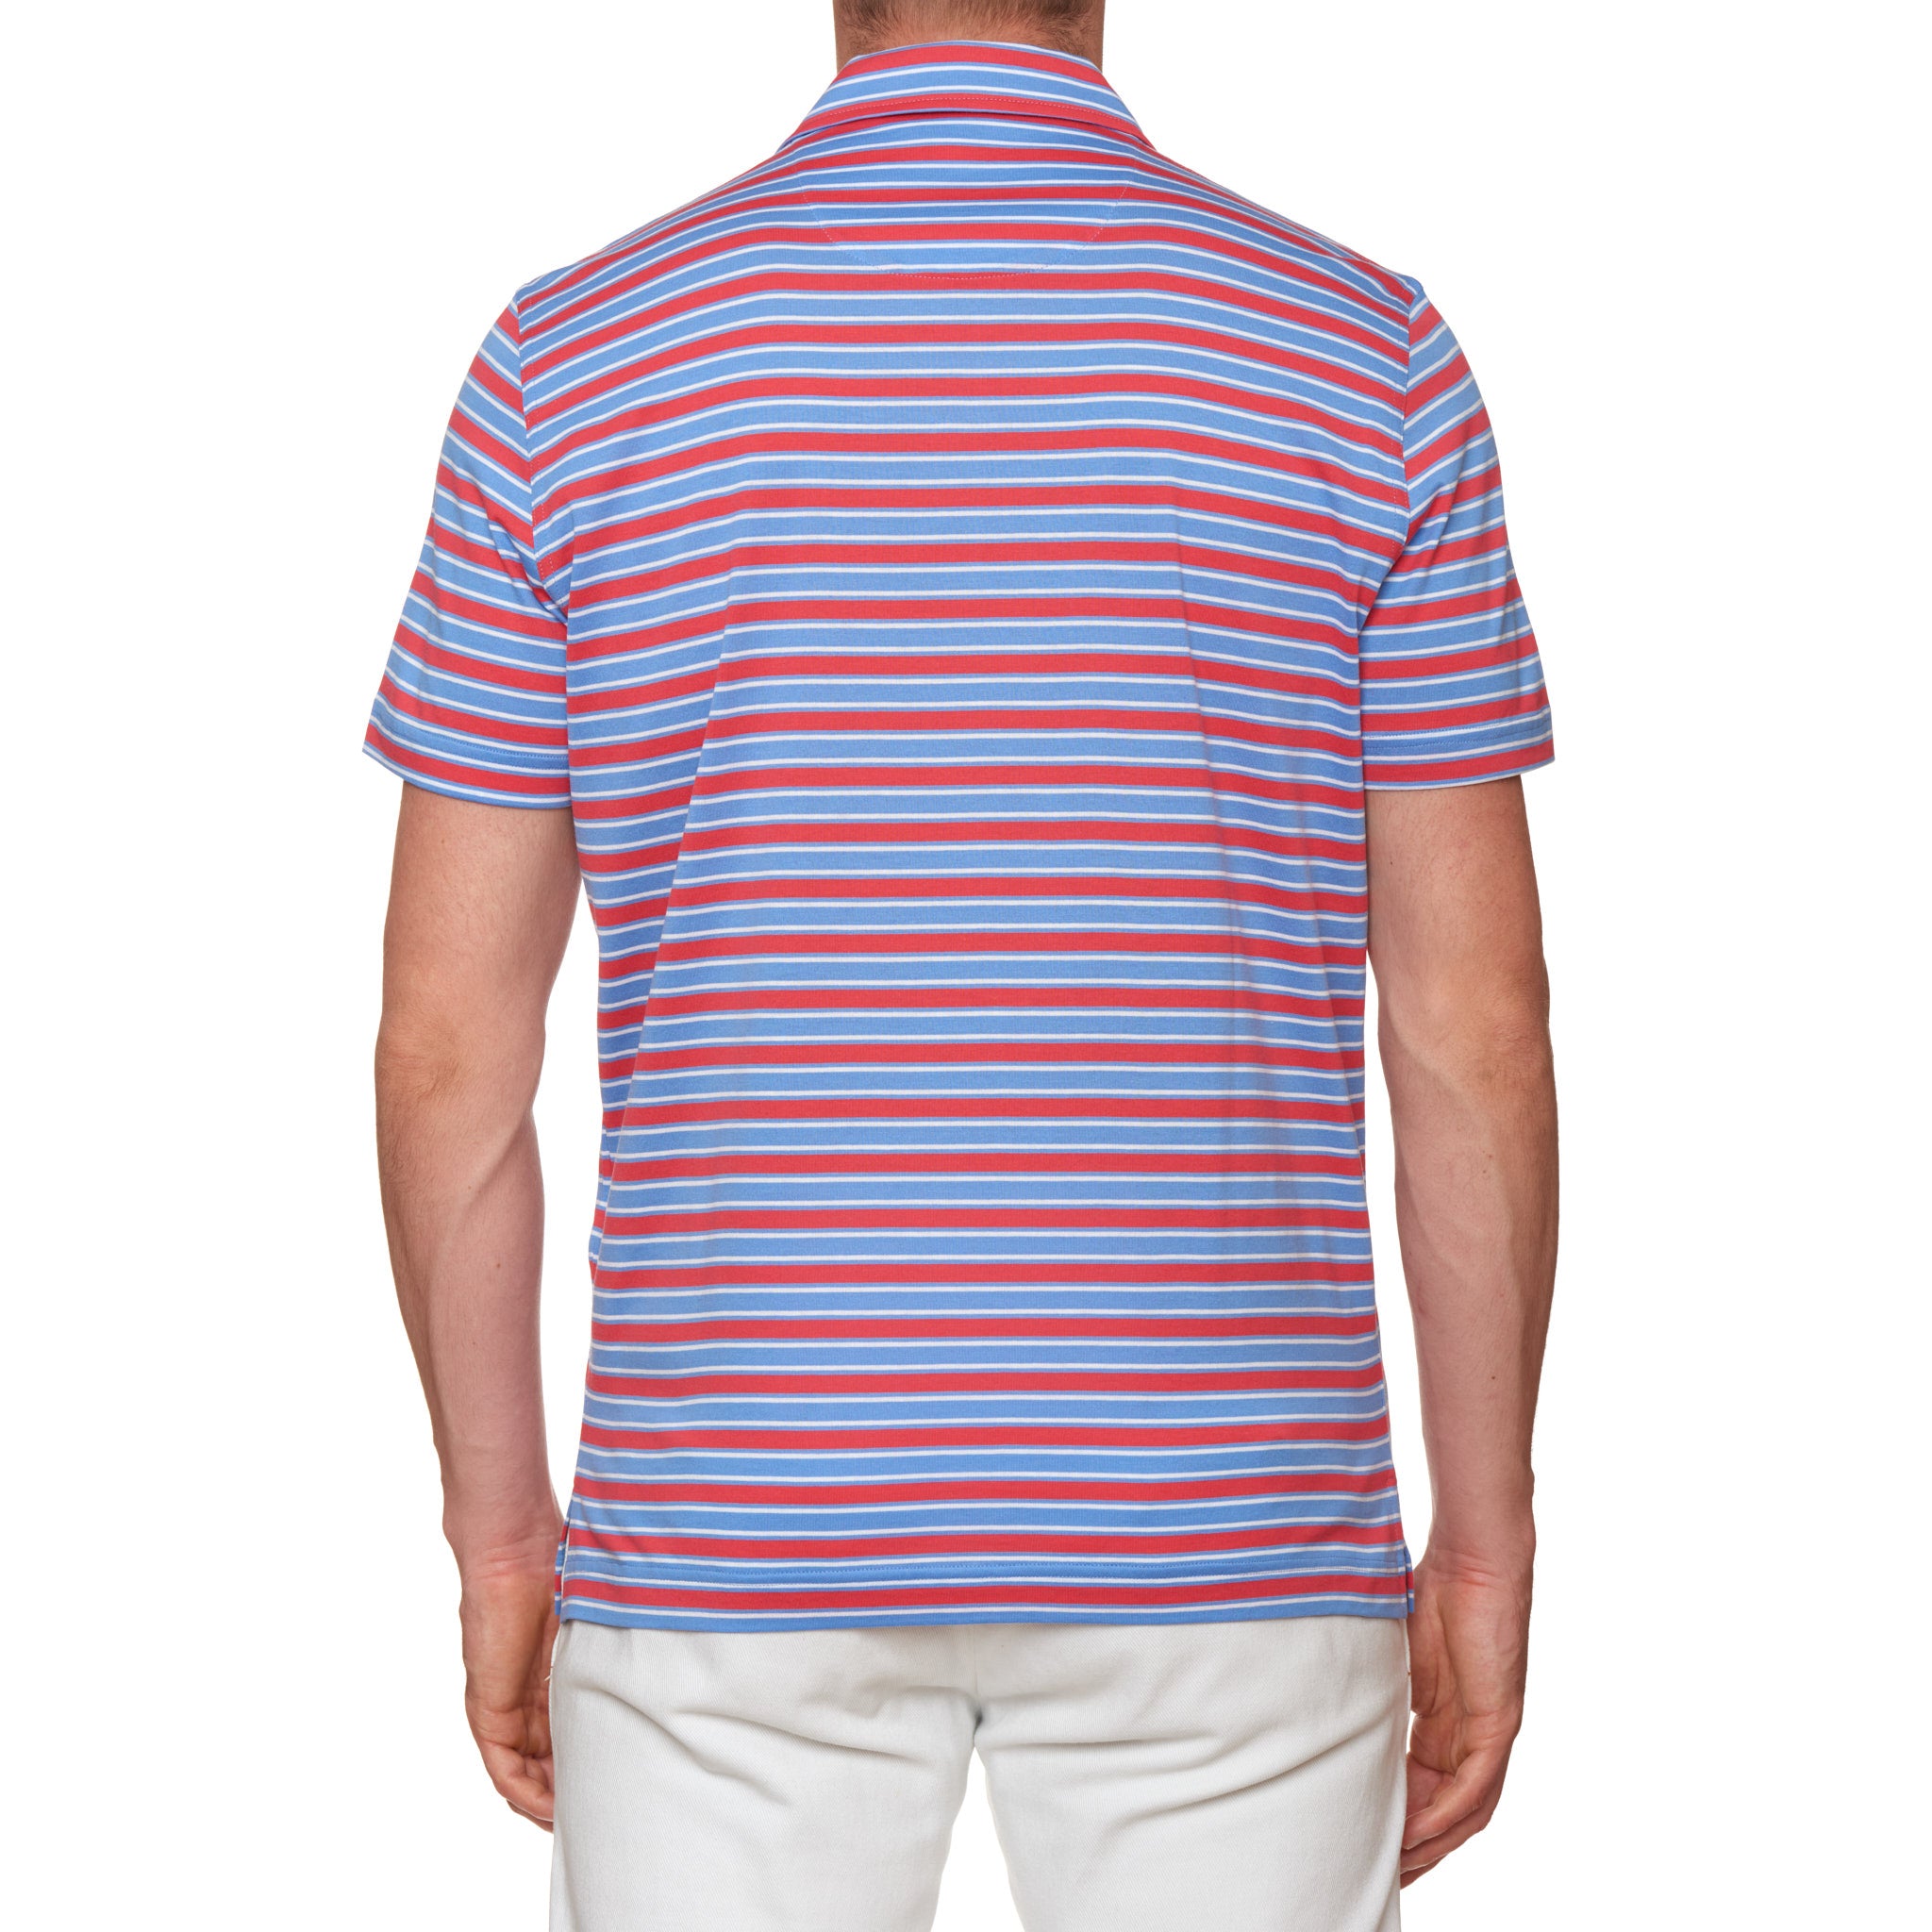 FEDELI "Florida" Multi-Color Striped Cotton Jersey Polo Shirt EU 52 NEW US L FEDELI